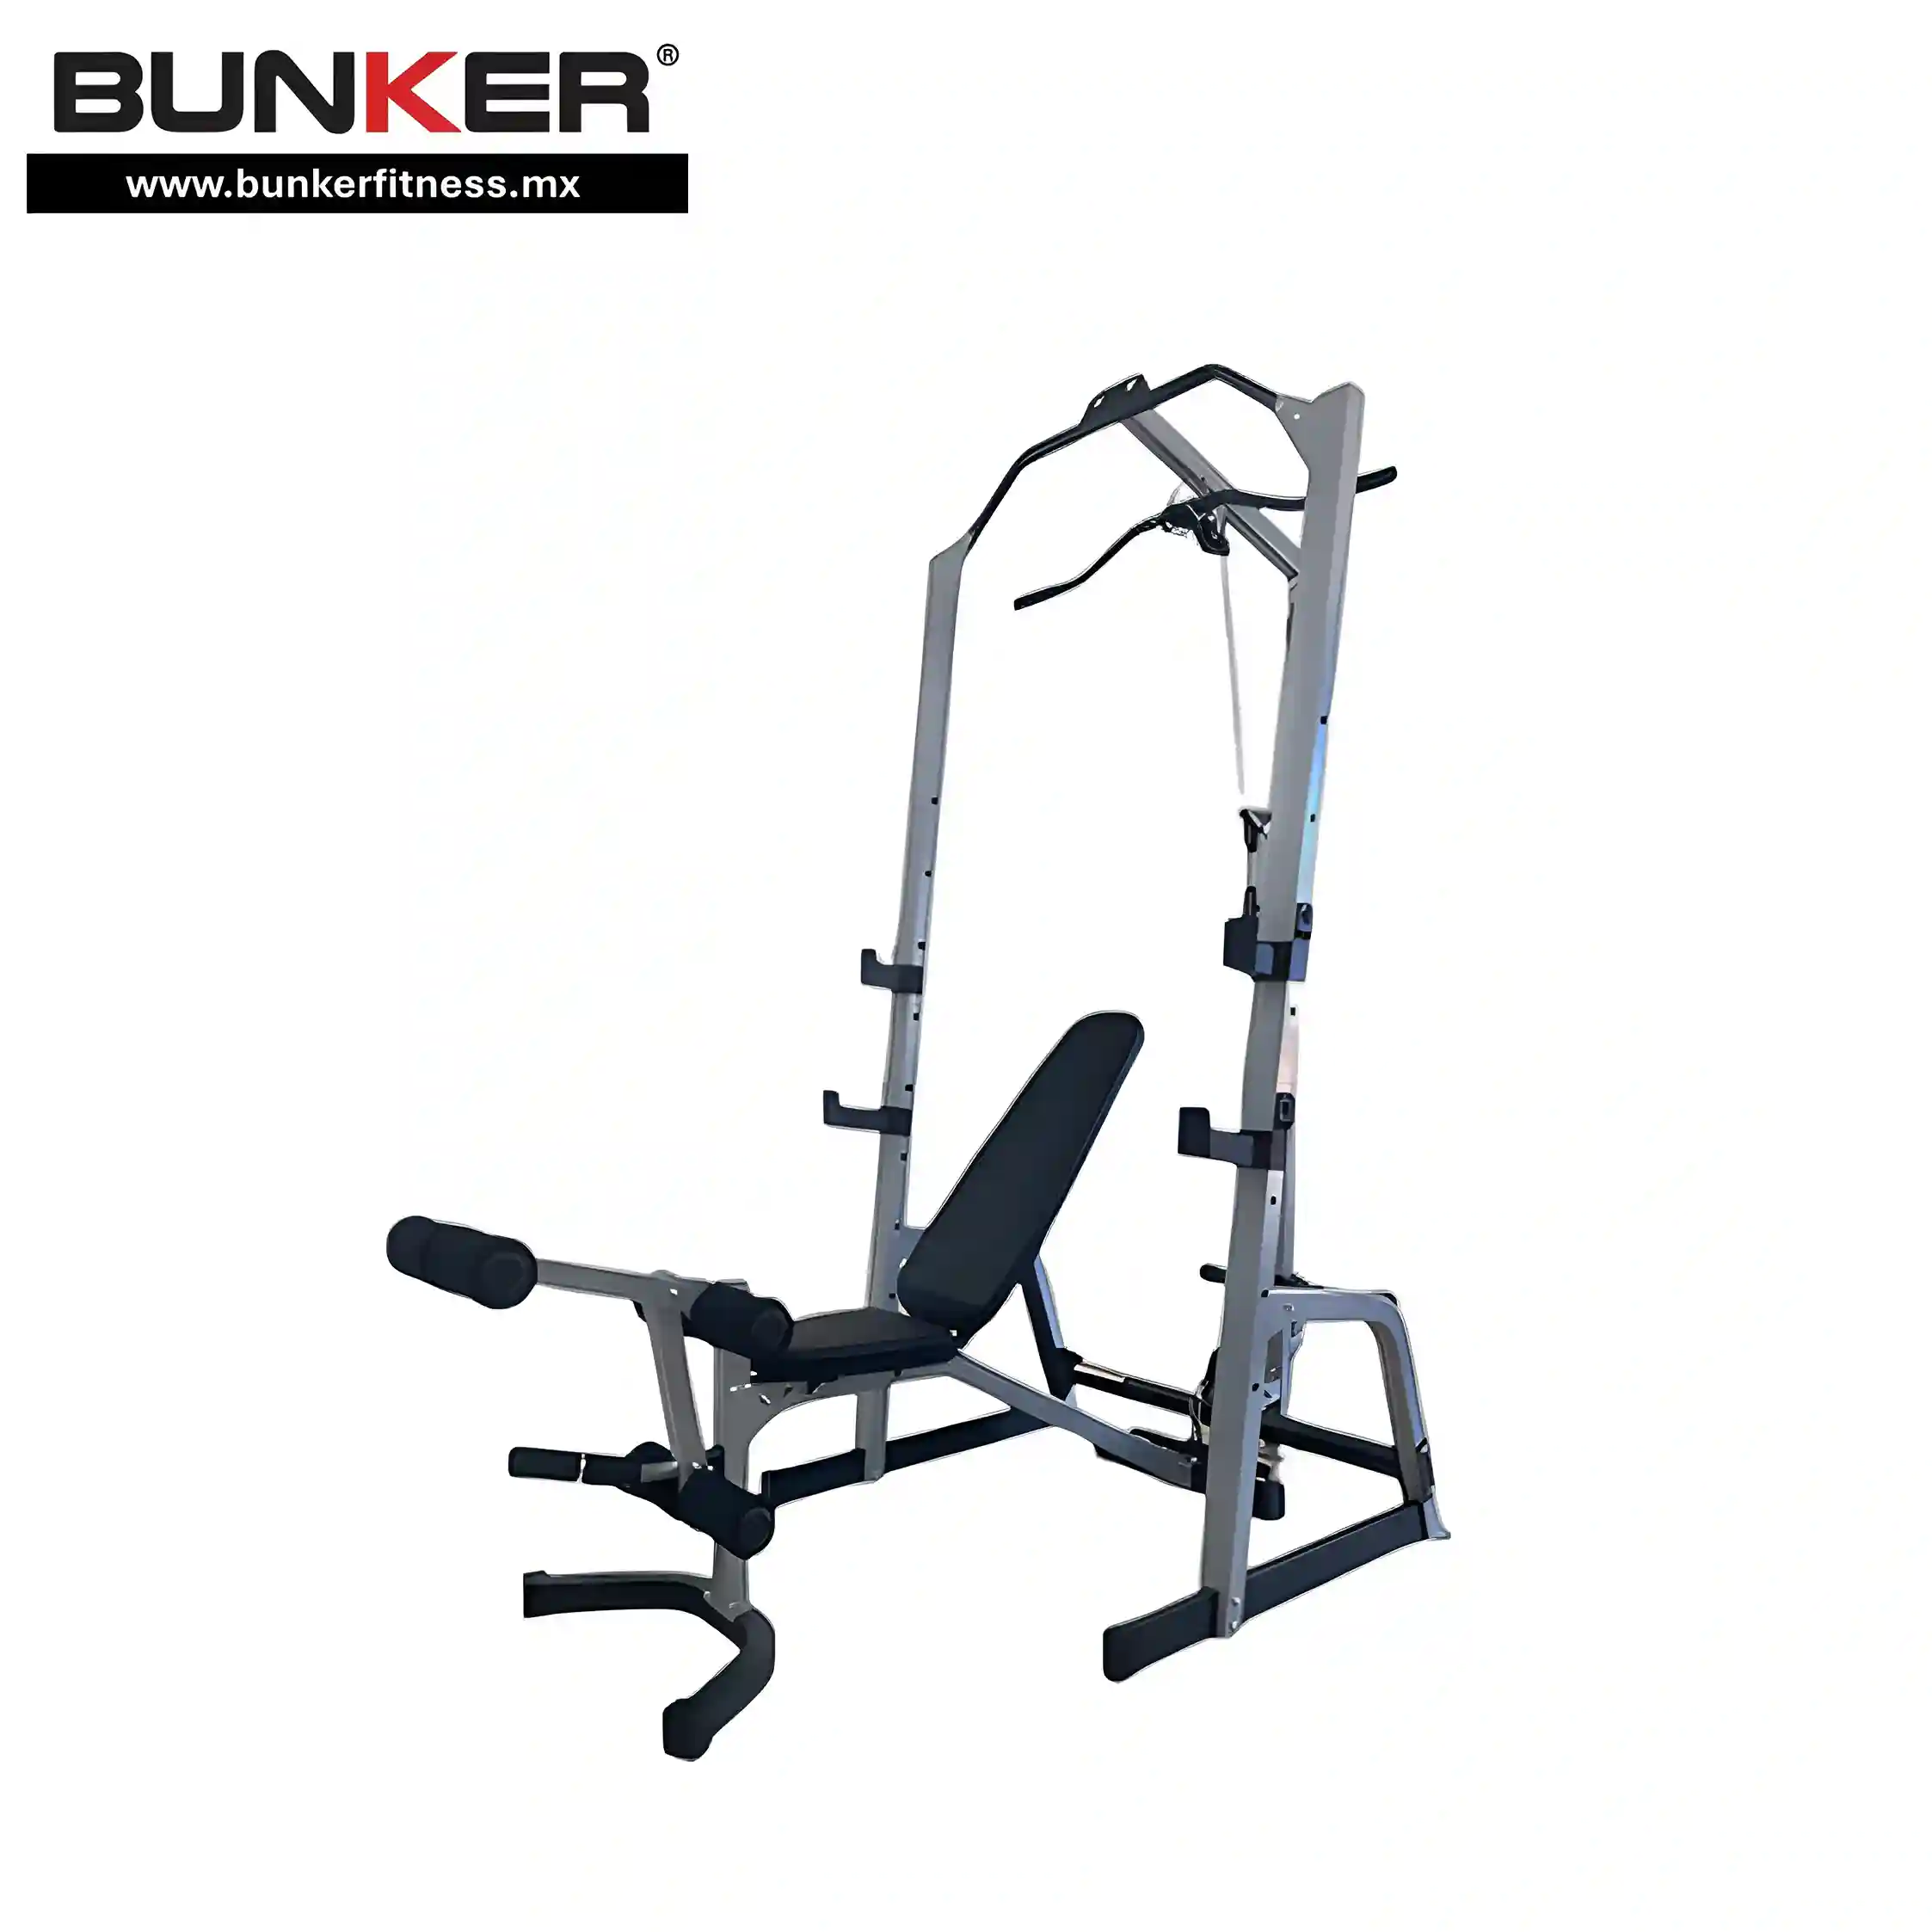 rack profesional multifuncional para ejercicio y gimnasio en casa bunker gym bunker fitness